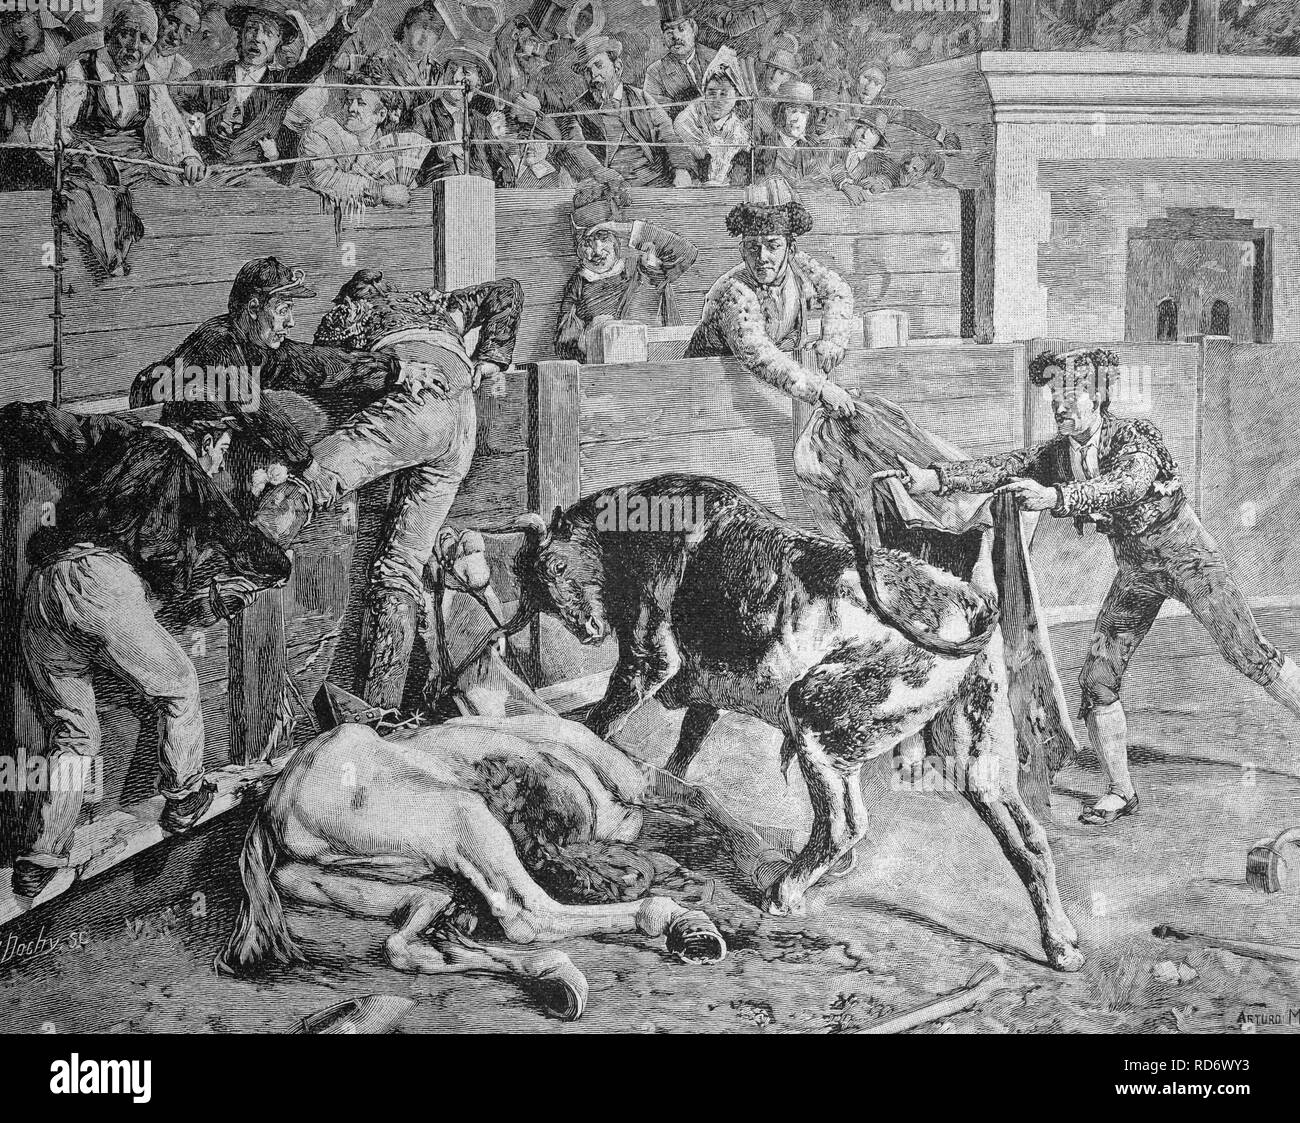 Corrida, vol d'un matador en voie de disparition, l'Espagne, gravure sur bois, circa 1871 Banque D'Images